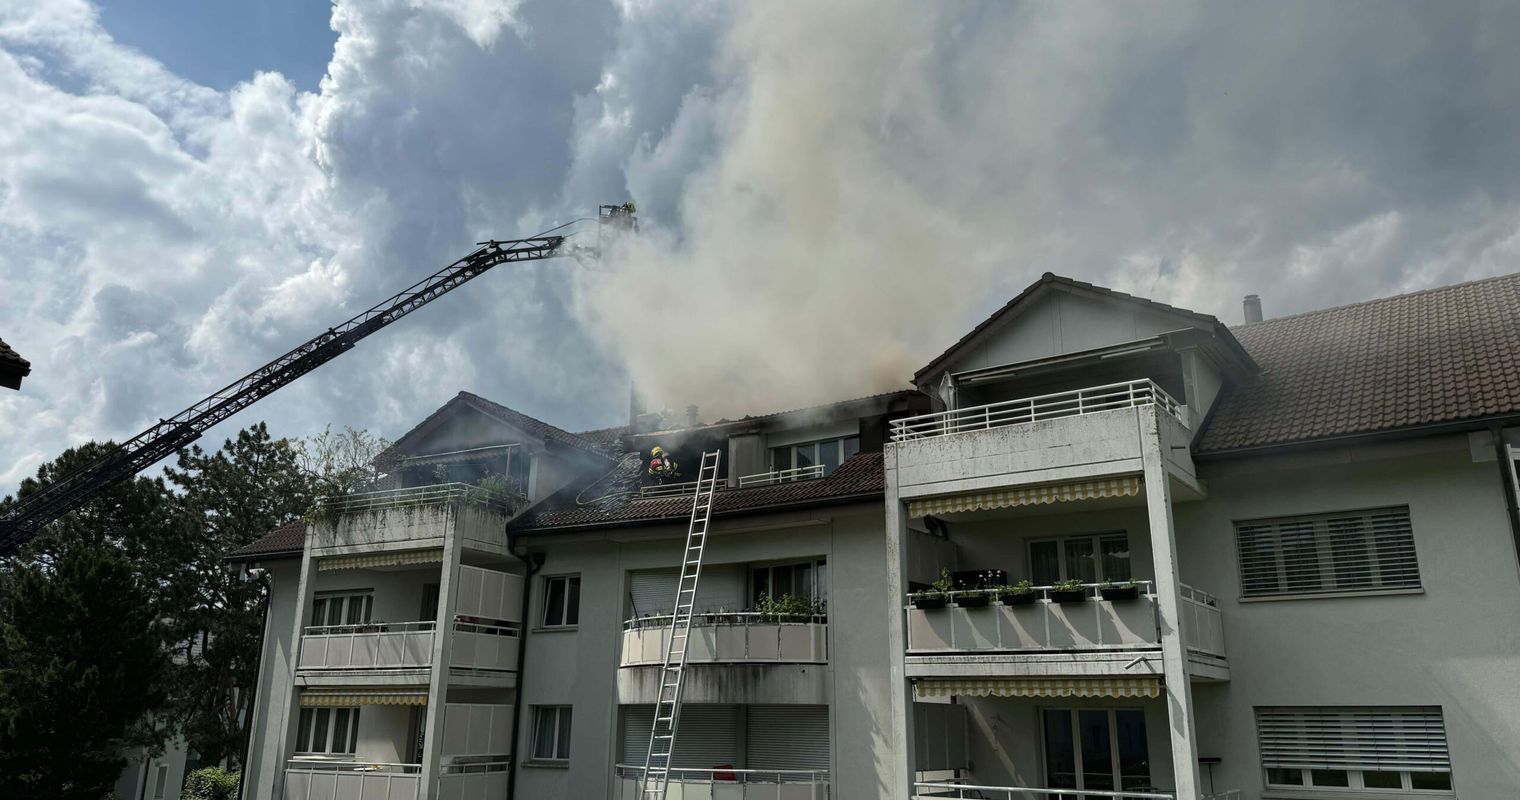 Kerze löst Brand in Menzinger Dachwohnung aus